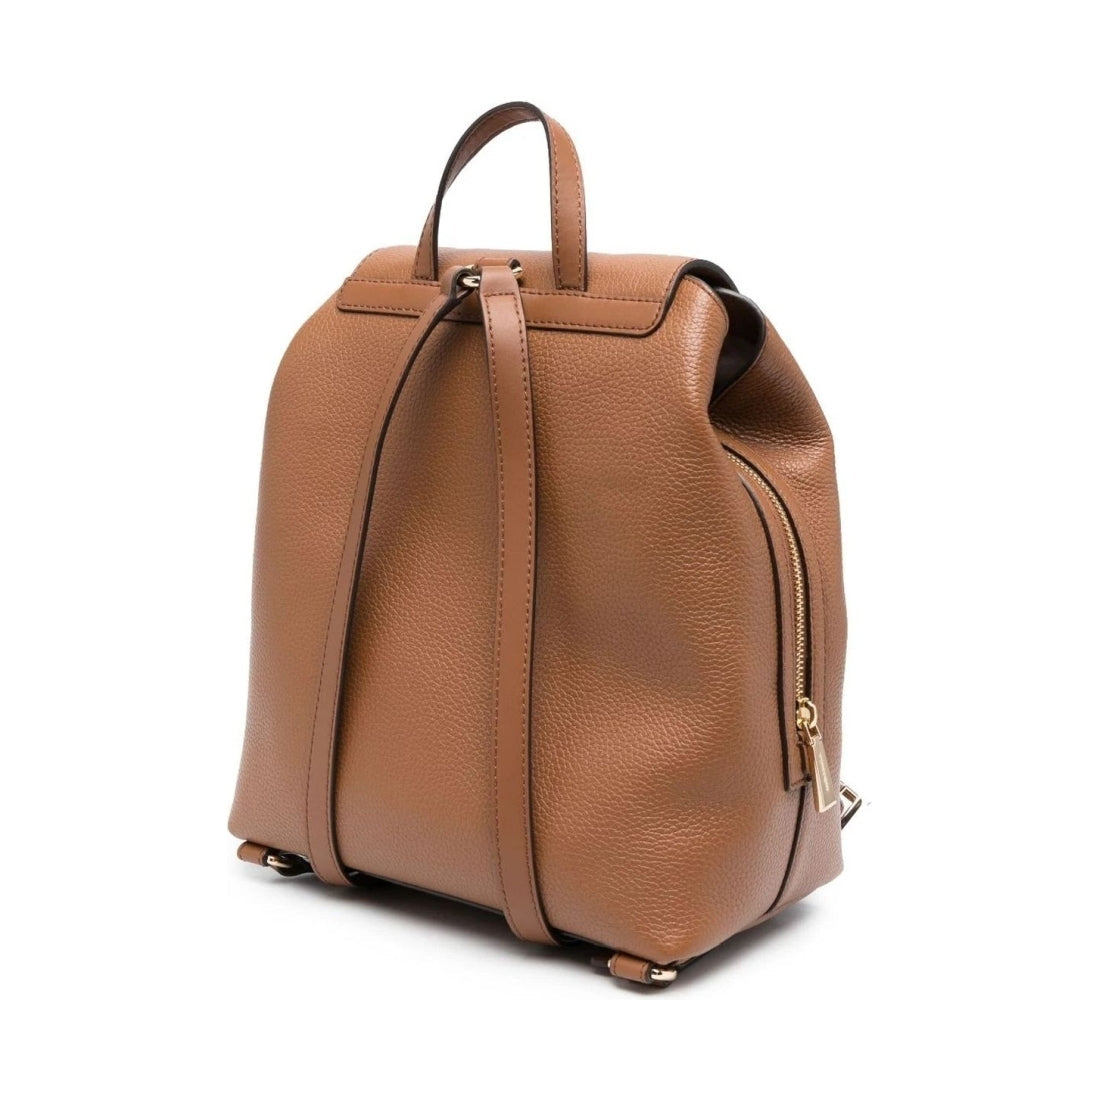 Michael Kors womens luggage md backpack | Vilbury London